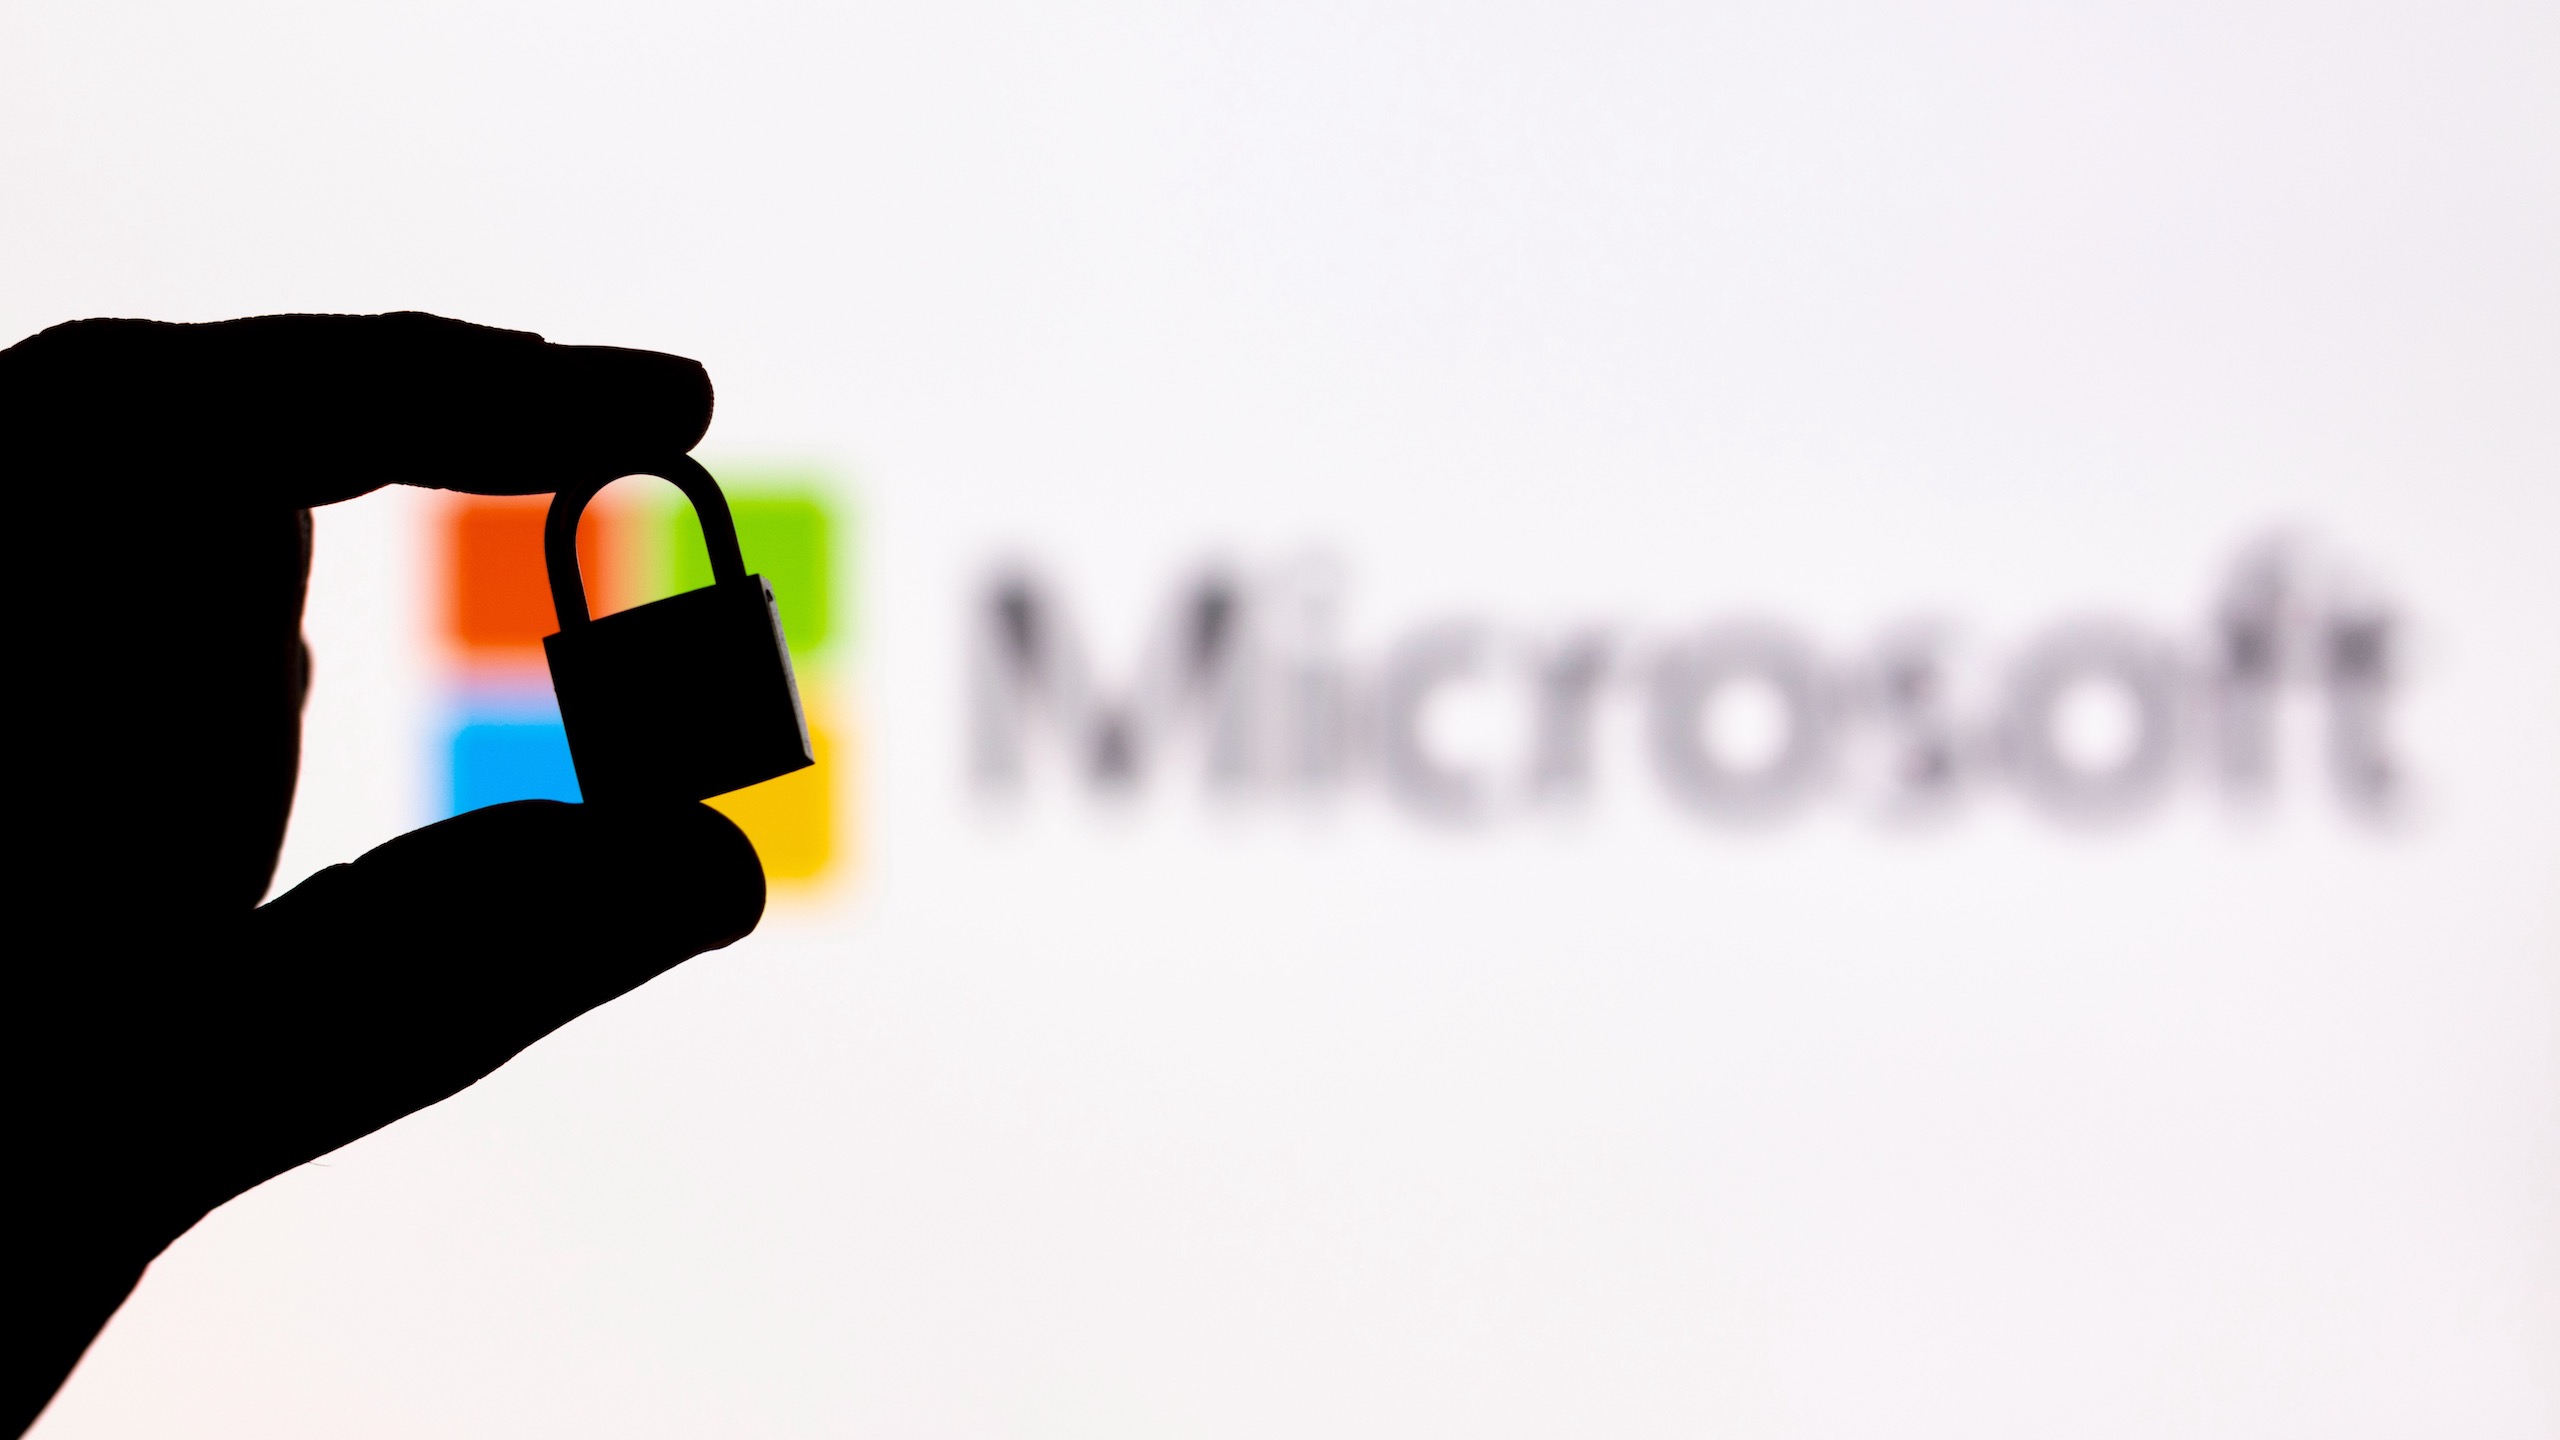 Ο Βοηθός Cybersecurity Assistant που βασίζεται σε AI παρουσίασε η Microsoft